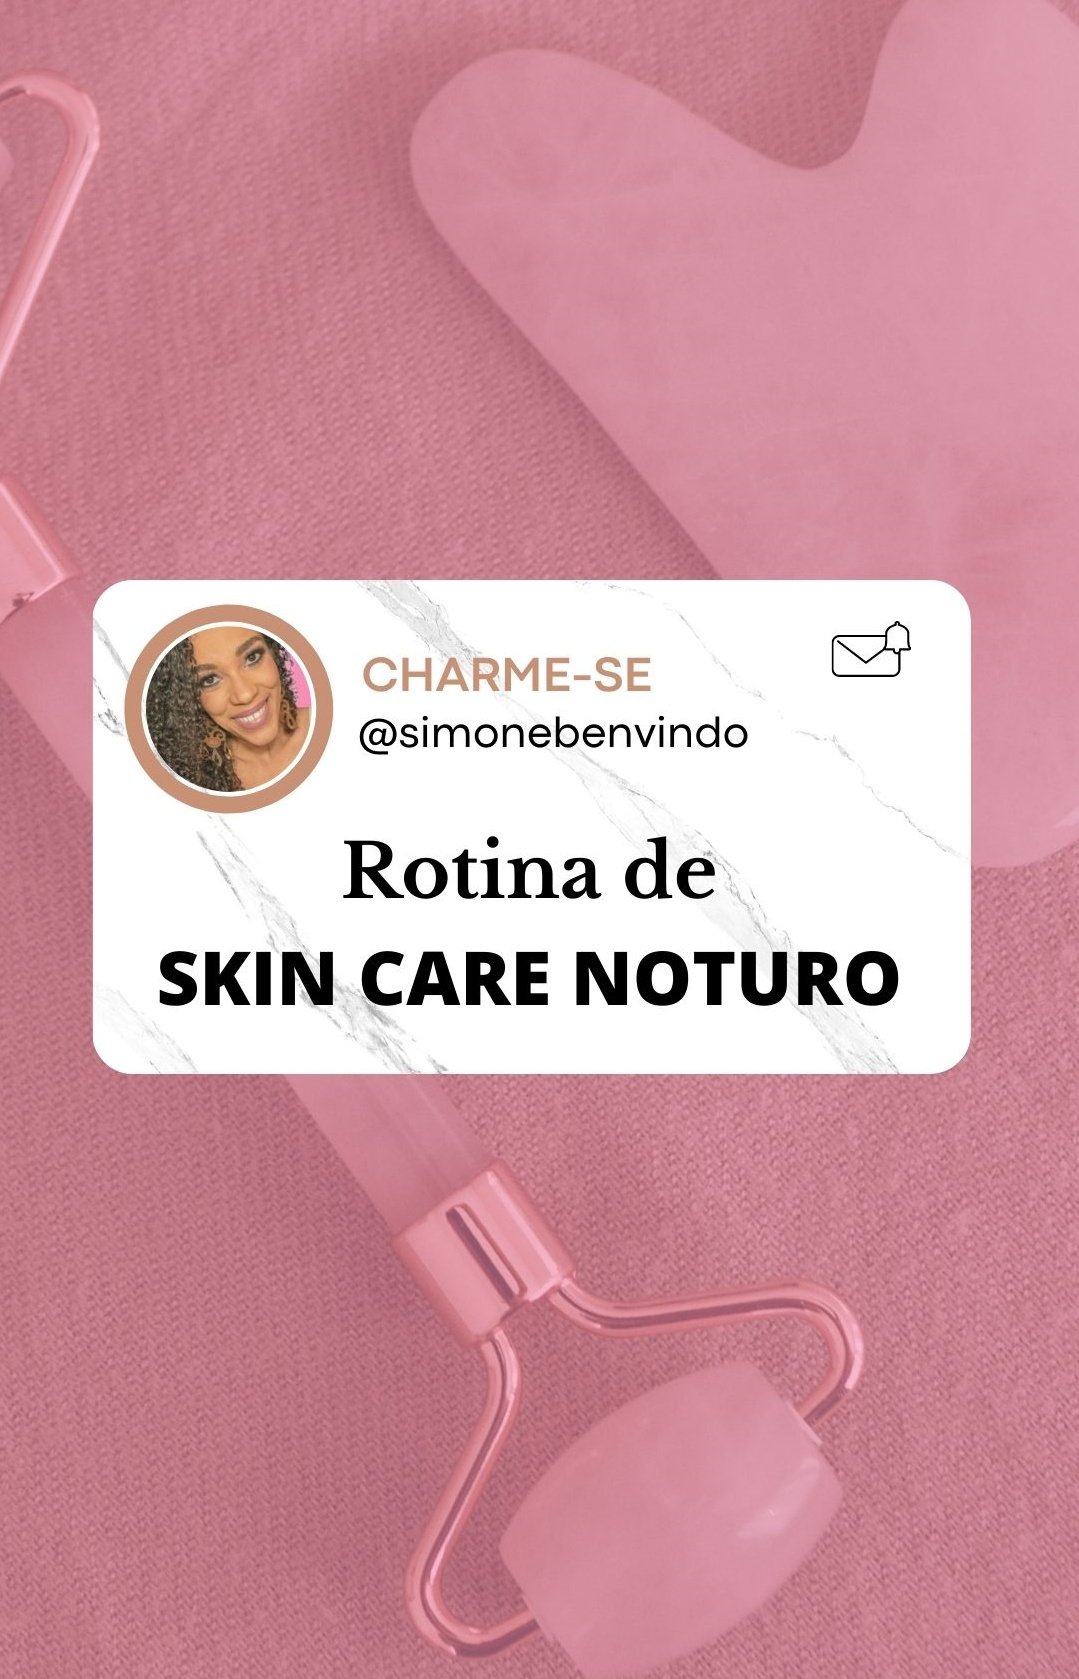 Skin care noturno: Como fazer e quais produtos usar